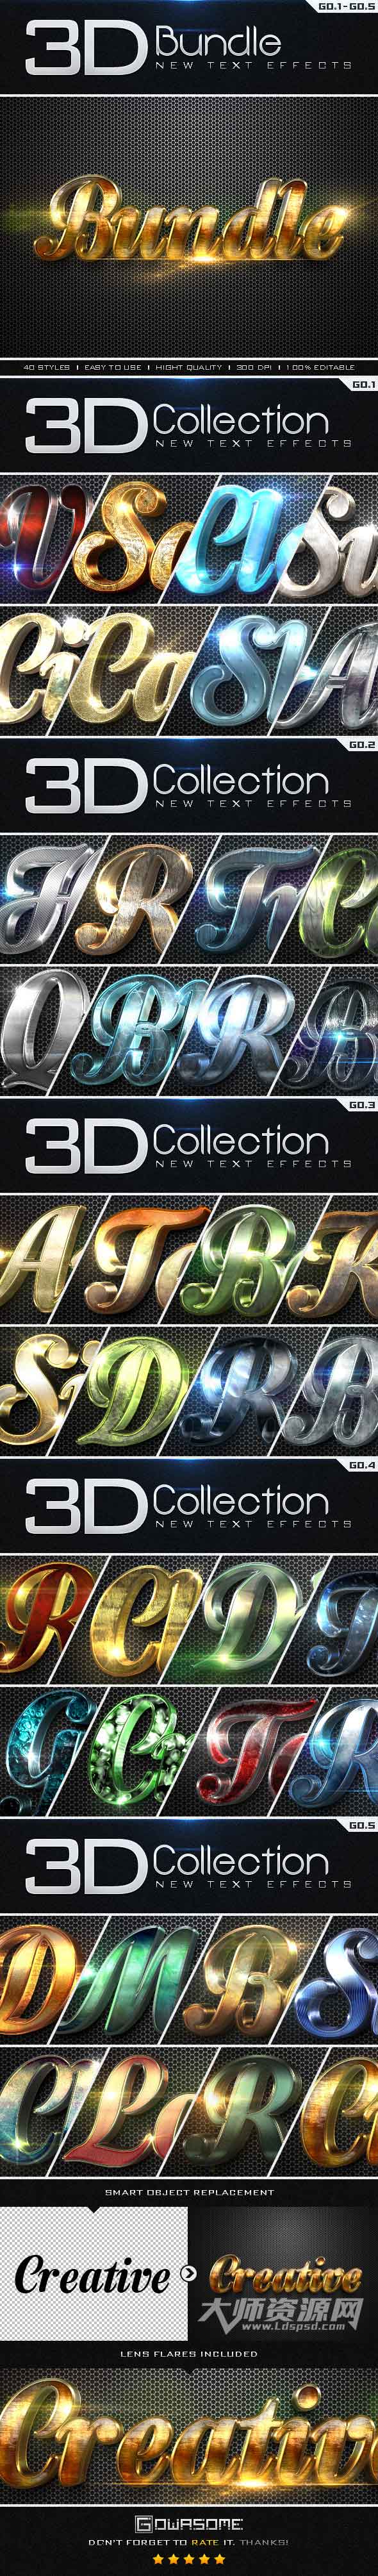 极品3D金属质感PS样式1－5合集：New 3D Collection Text Effects Bundle